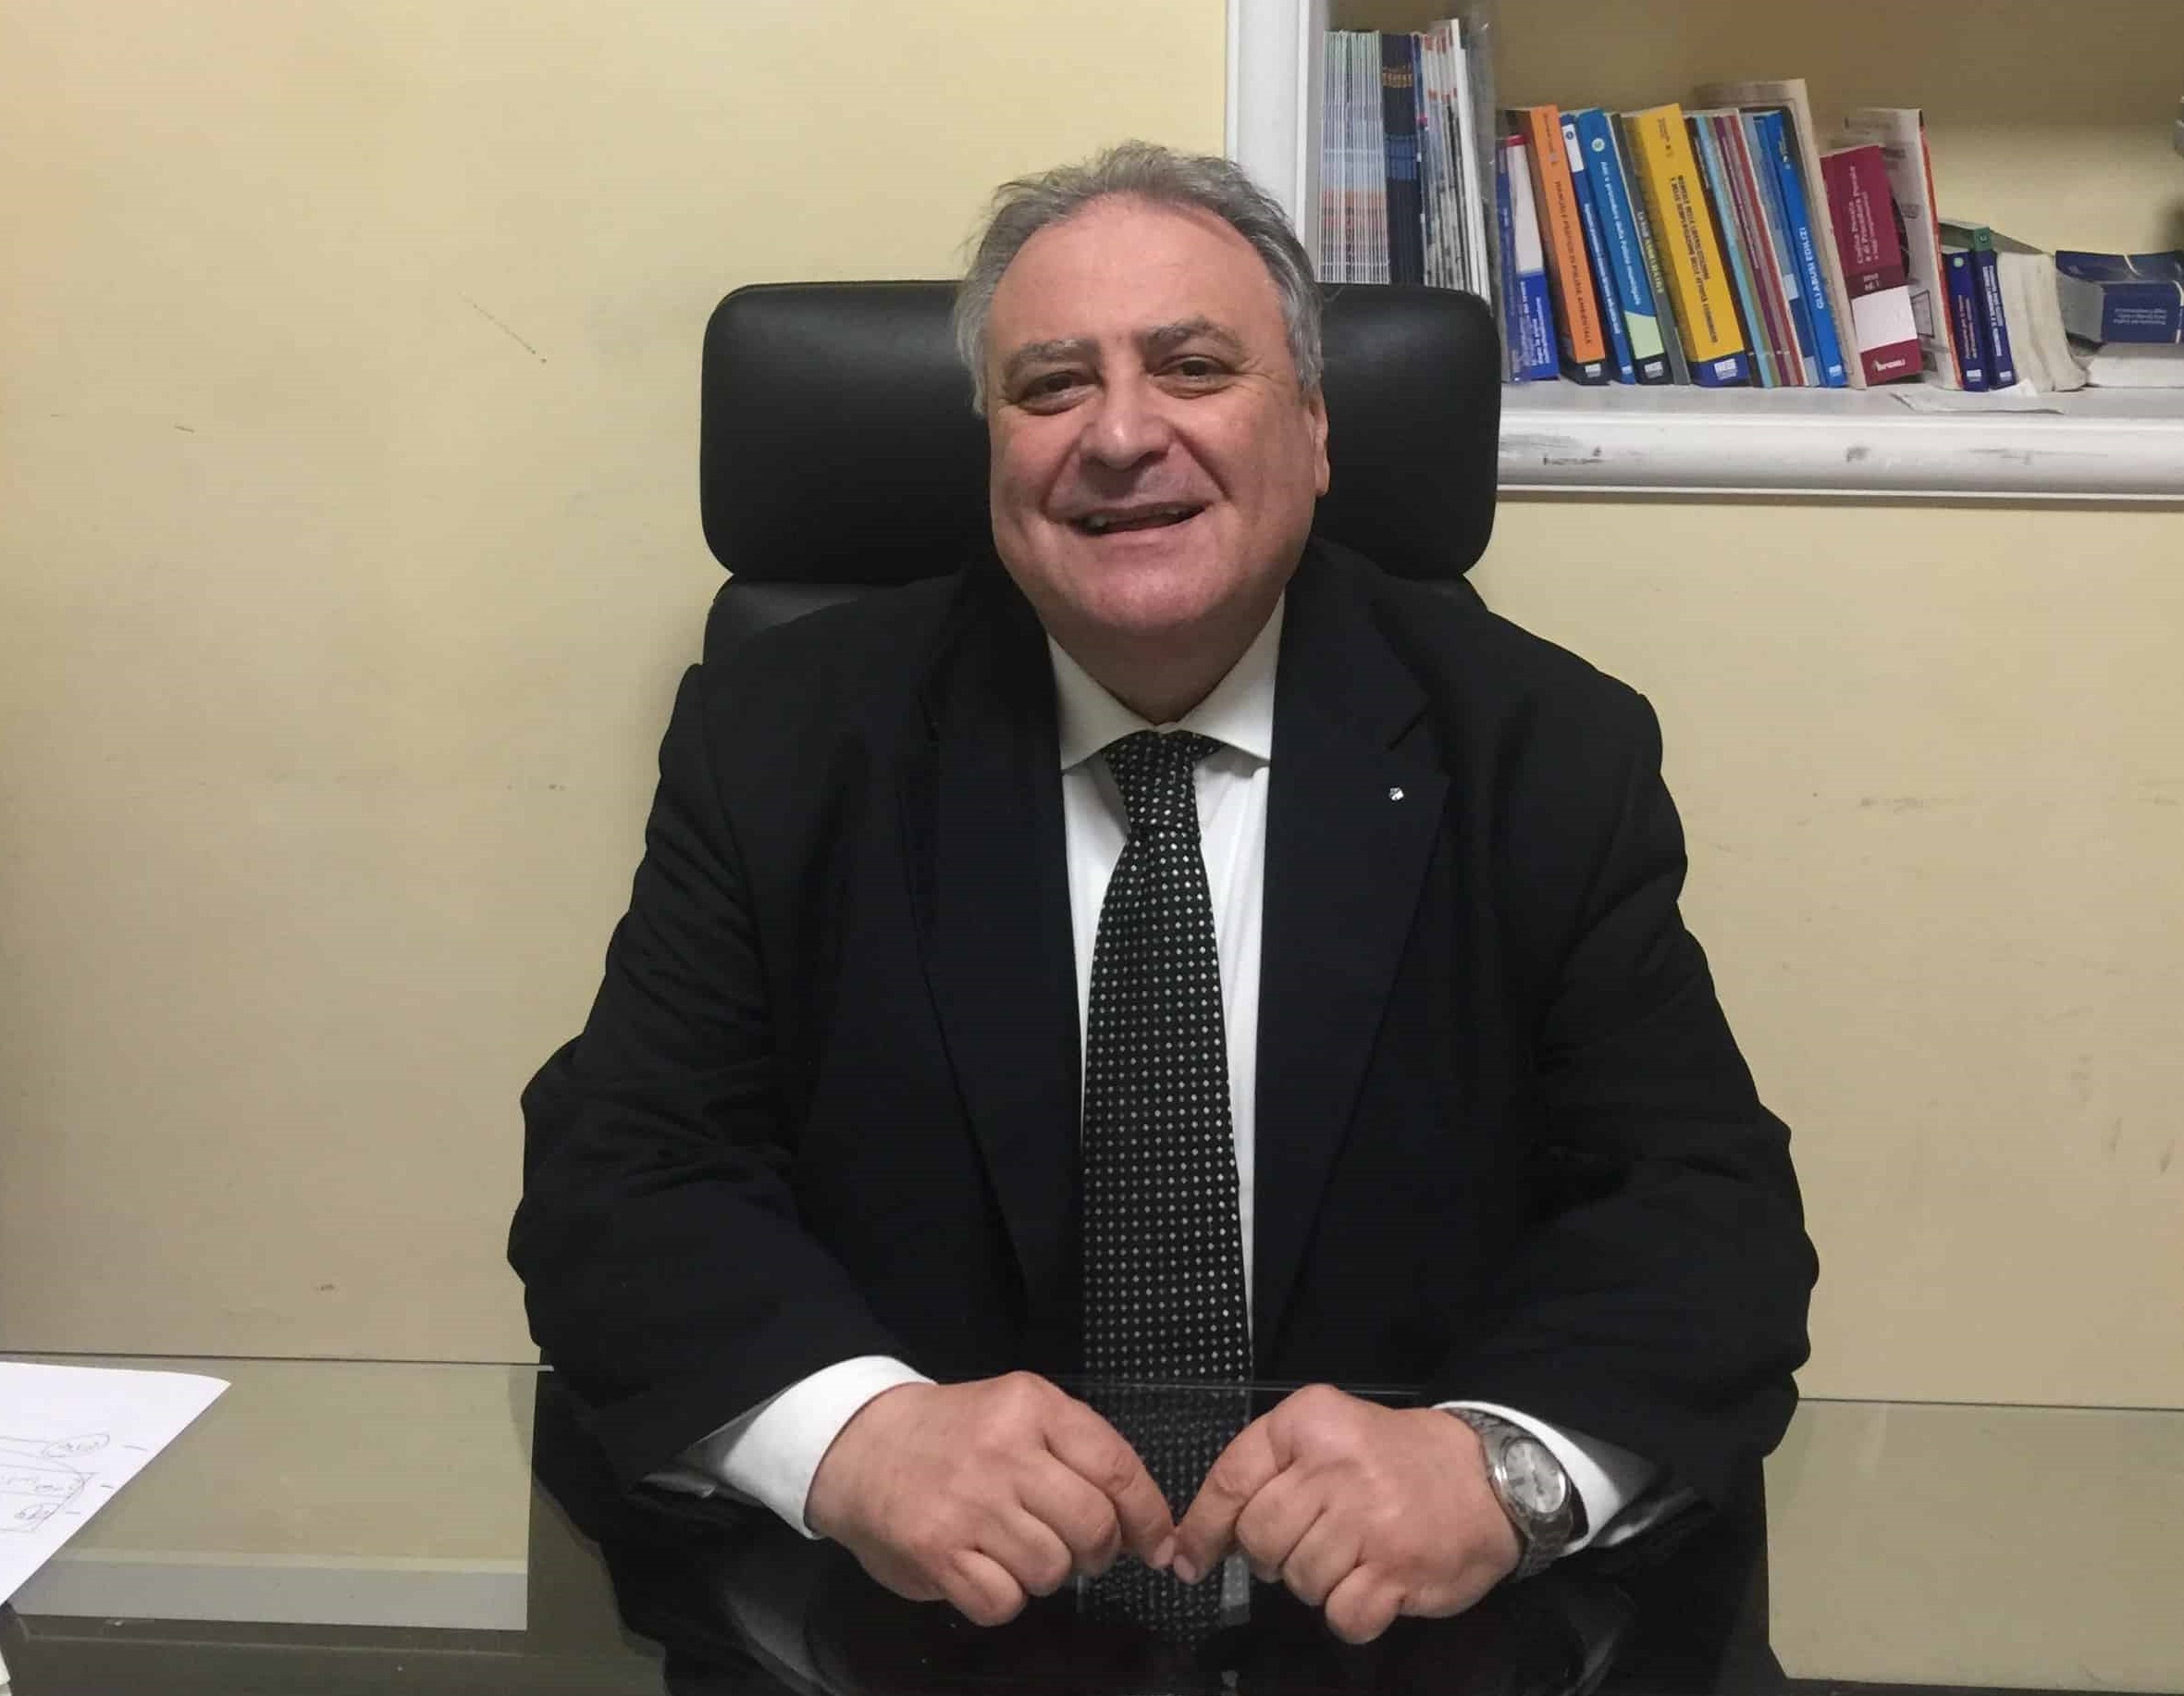 Ventisei positivi al Covid nel comando della polizia municipale di Salerno: la denuncia di Angelo Rispoli della Csa provinciale